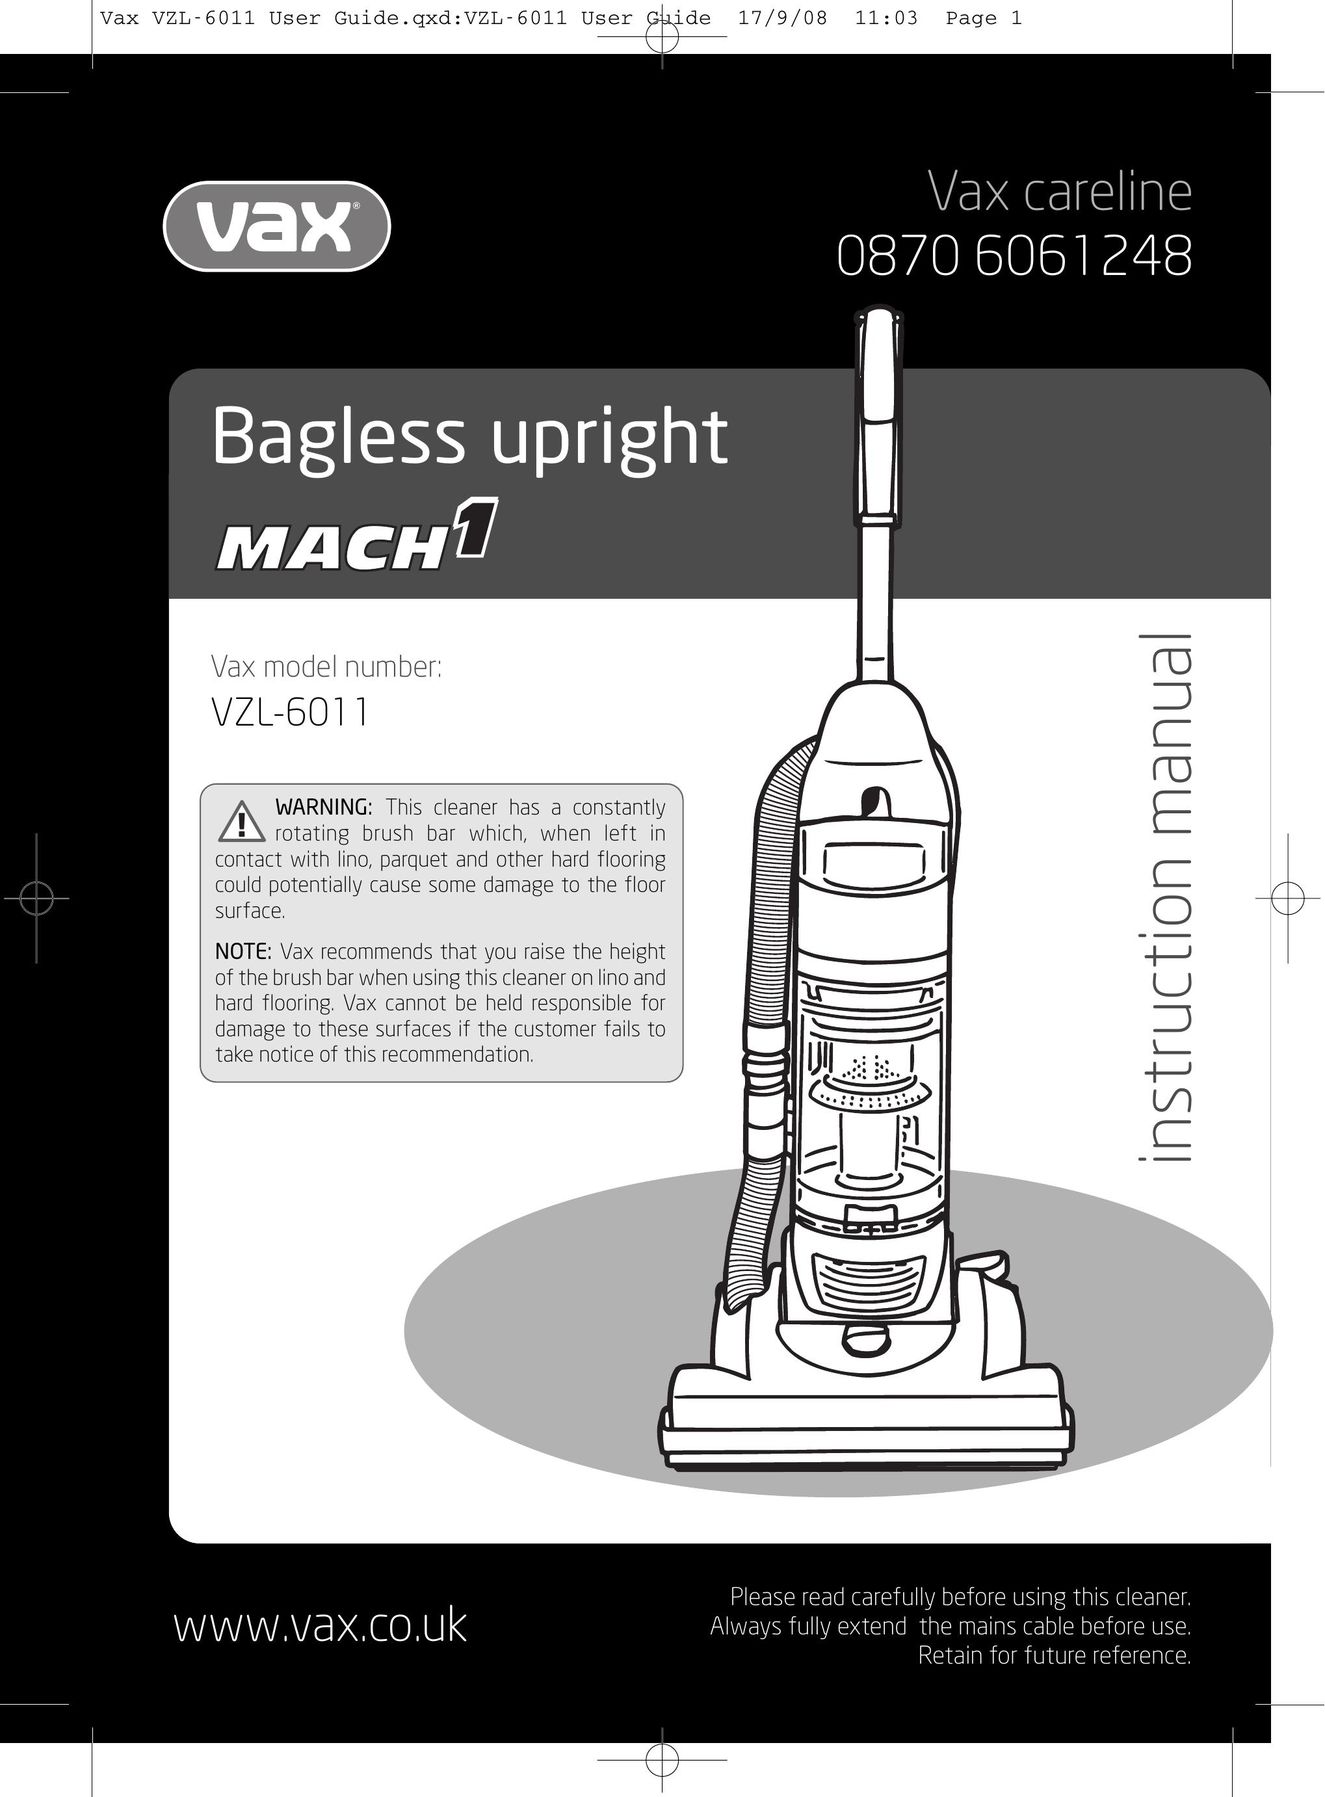 Vizio VZL-6011 Vacuum Cleaner User Manual